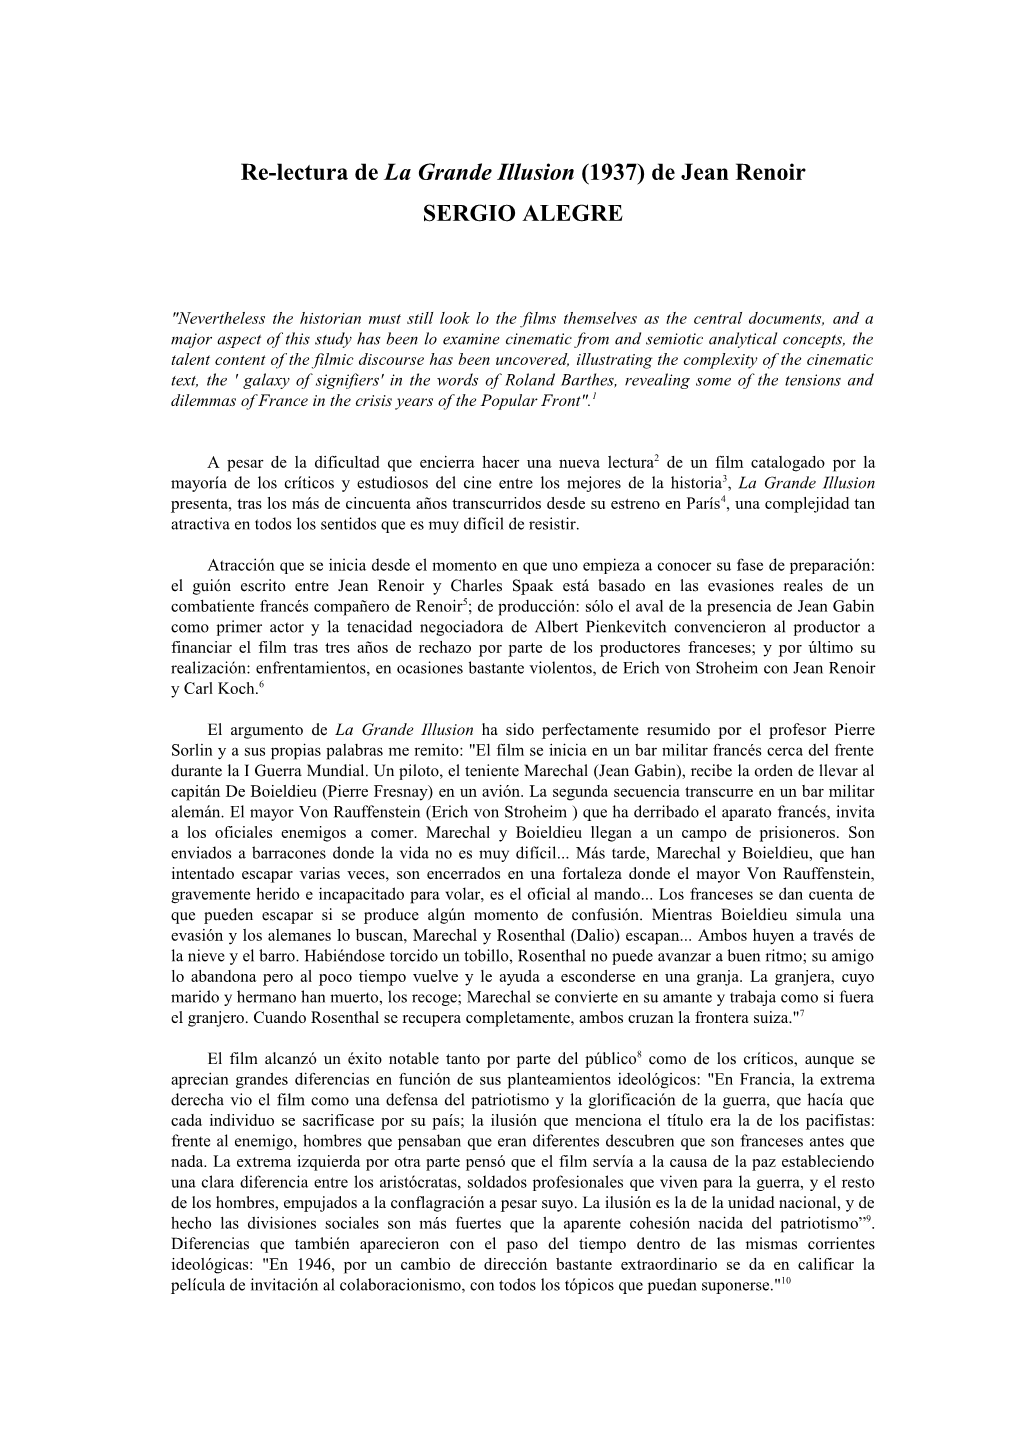 Re-Lectura De La Grande Illusion (1937) De Jean Renoir SERGIO ALEGRE